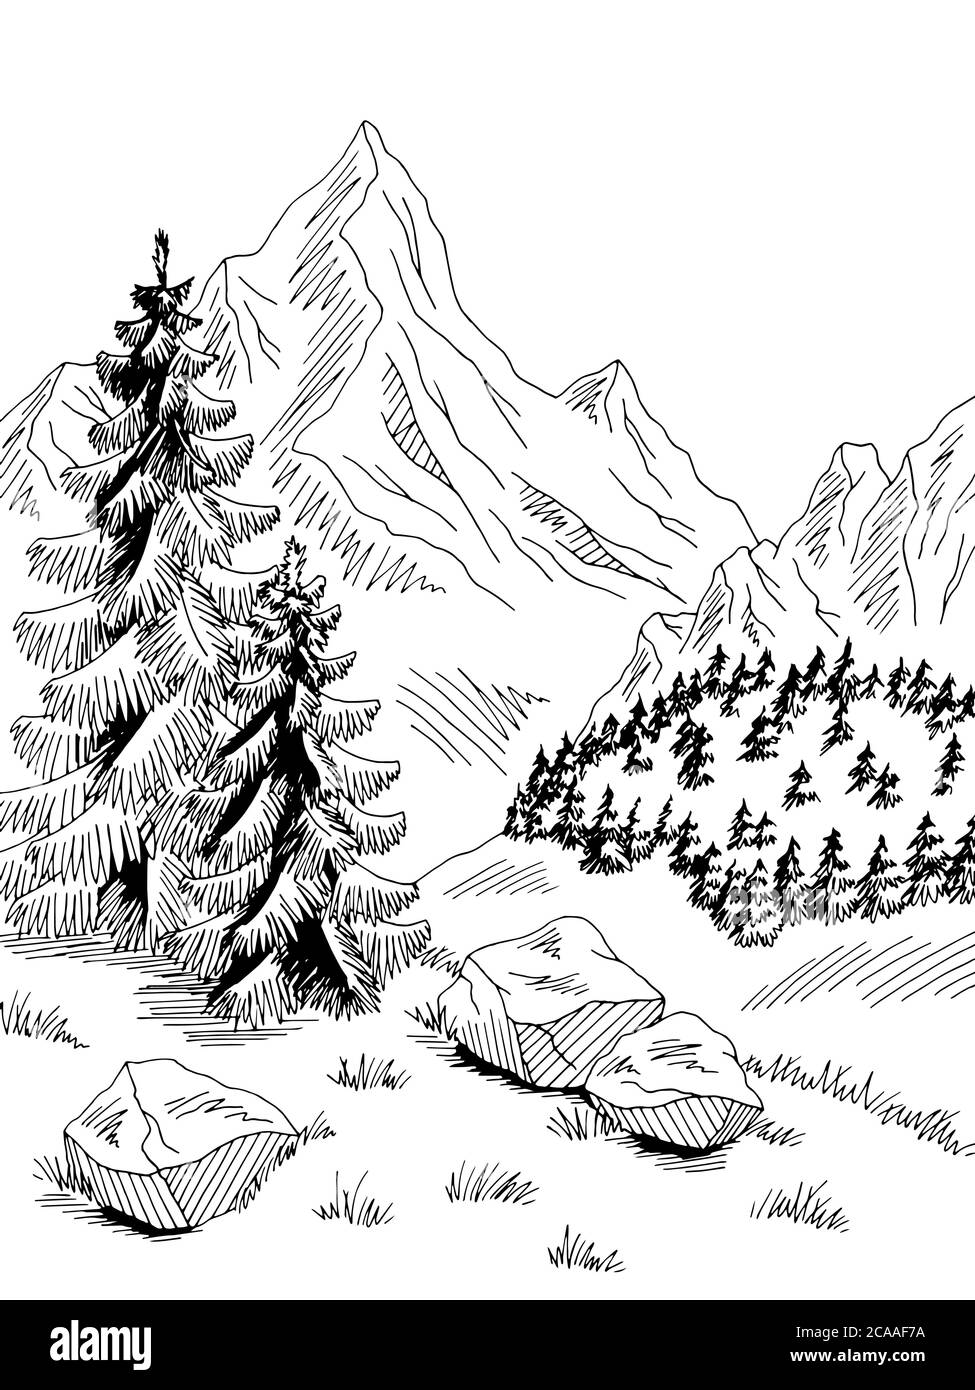 Berge Hügel Grafik schwarz weiß vertikale Landschaft Skizze Illustration Vektor Stock Vektor